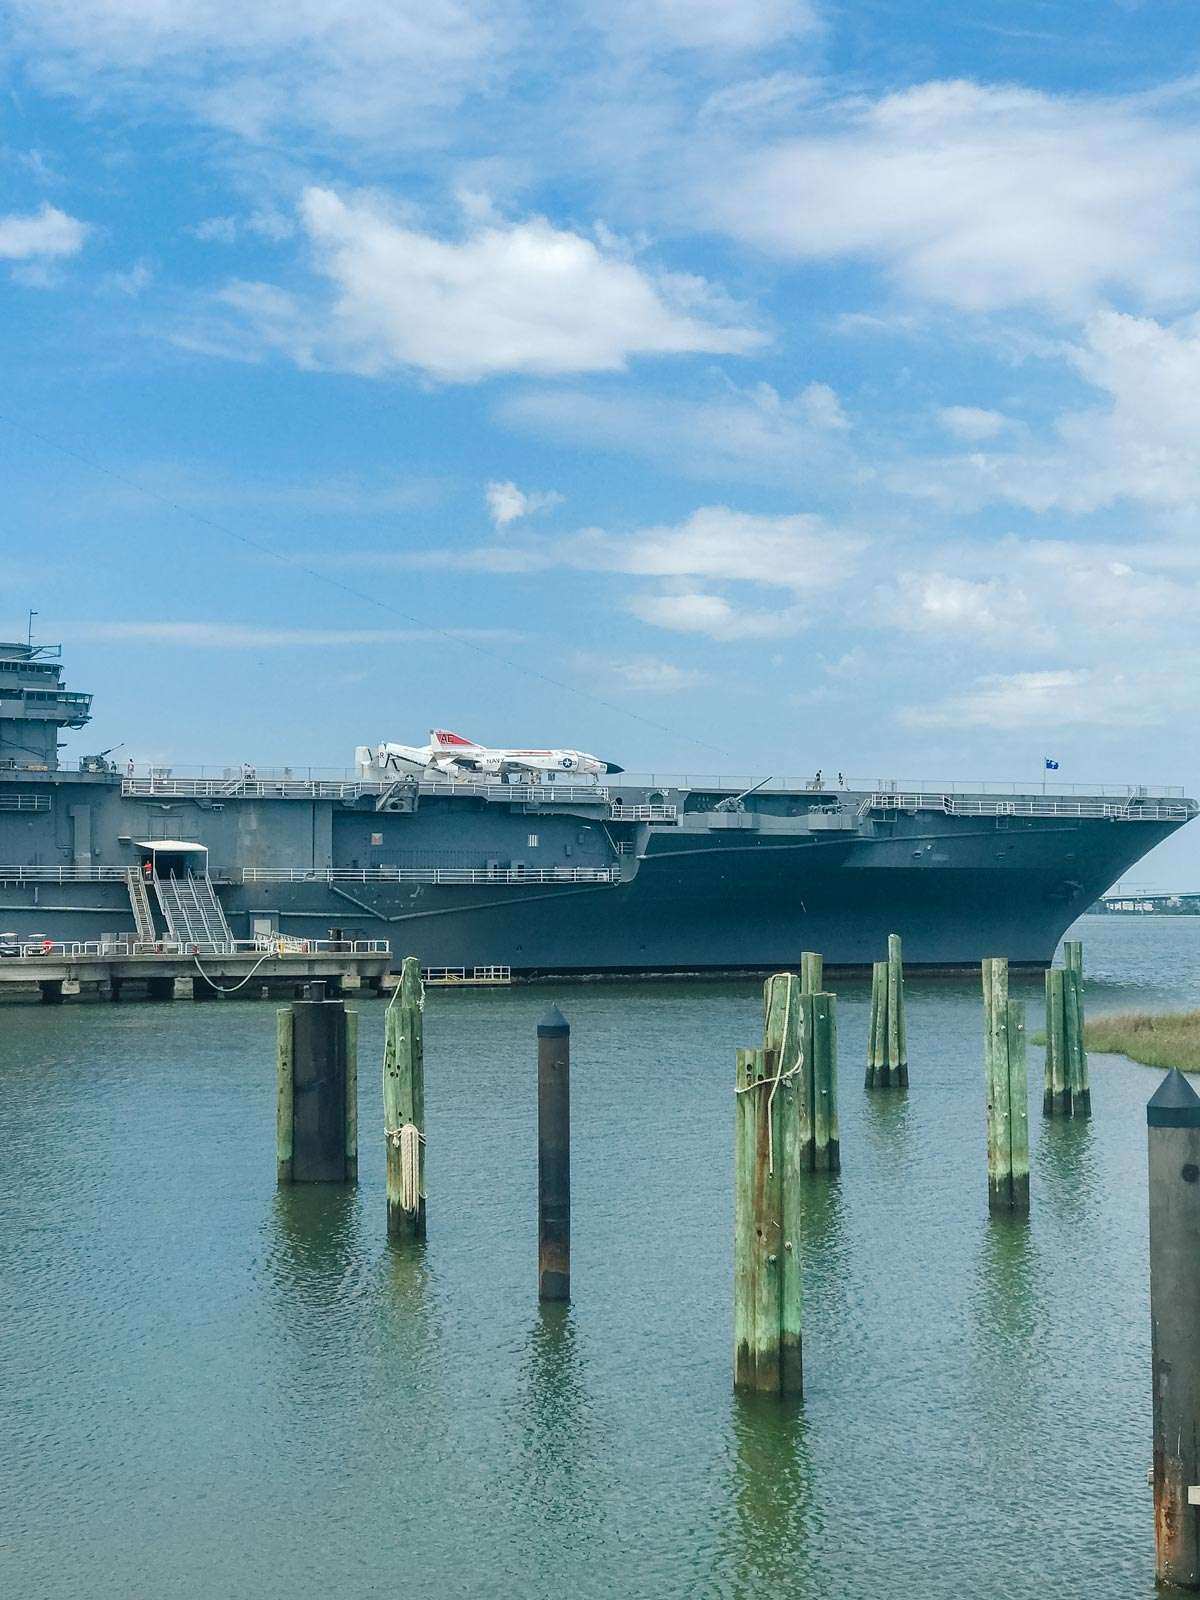 USS Yorktown aircraft carrier museum